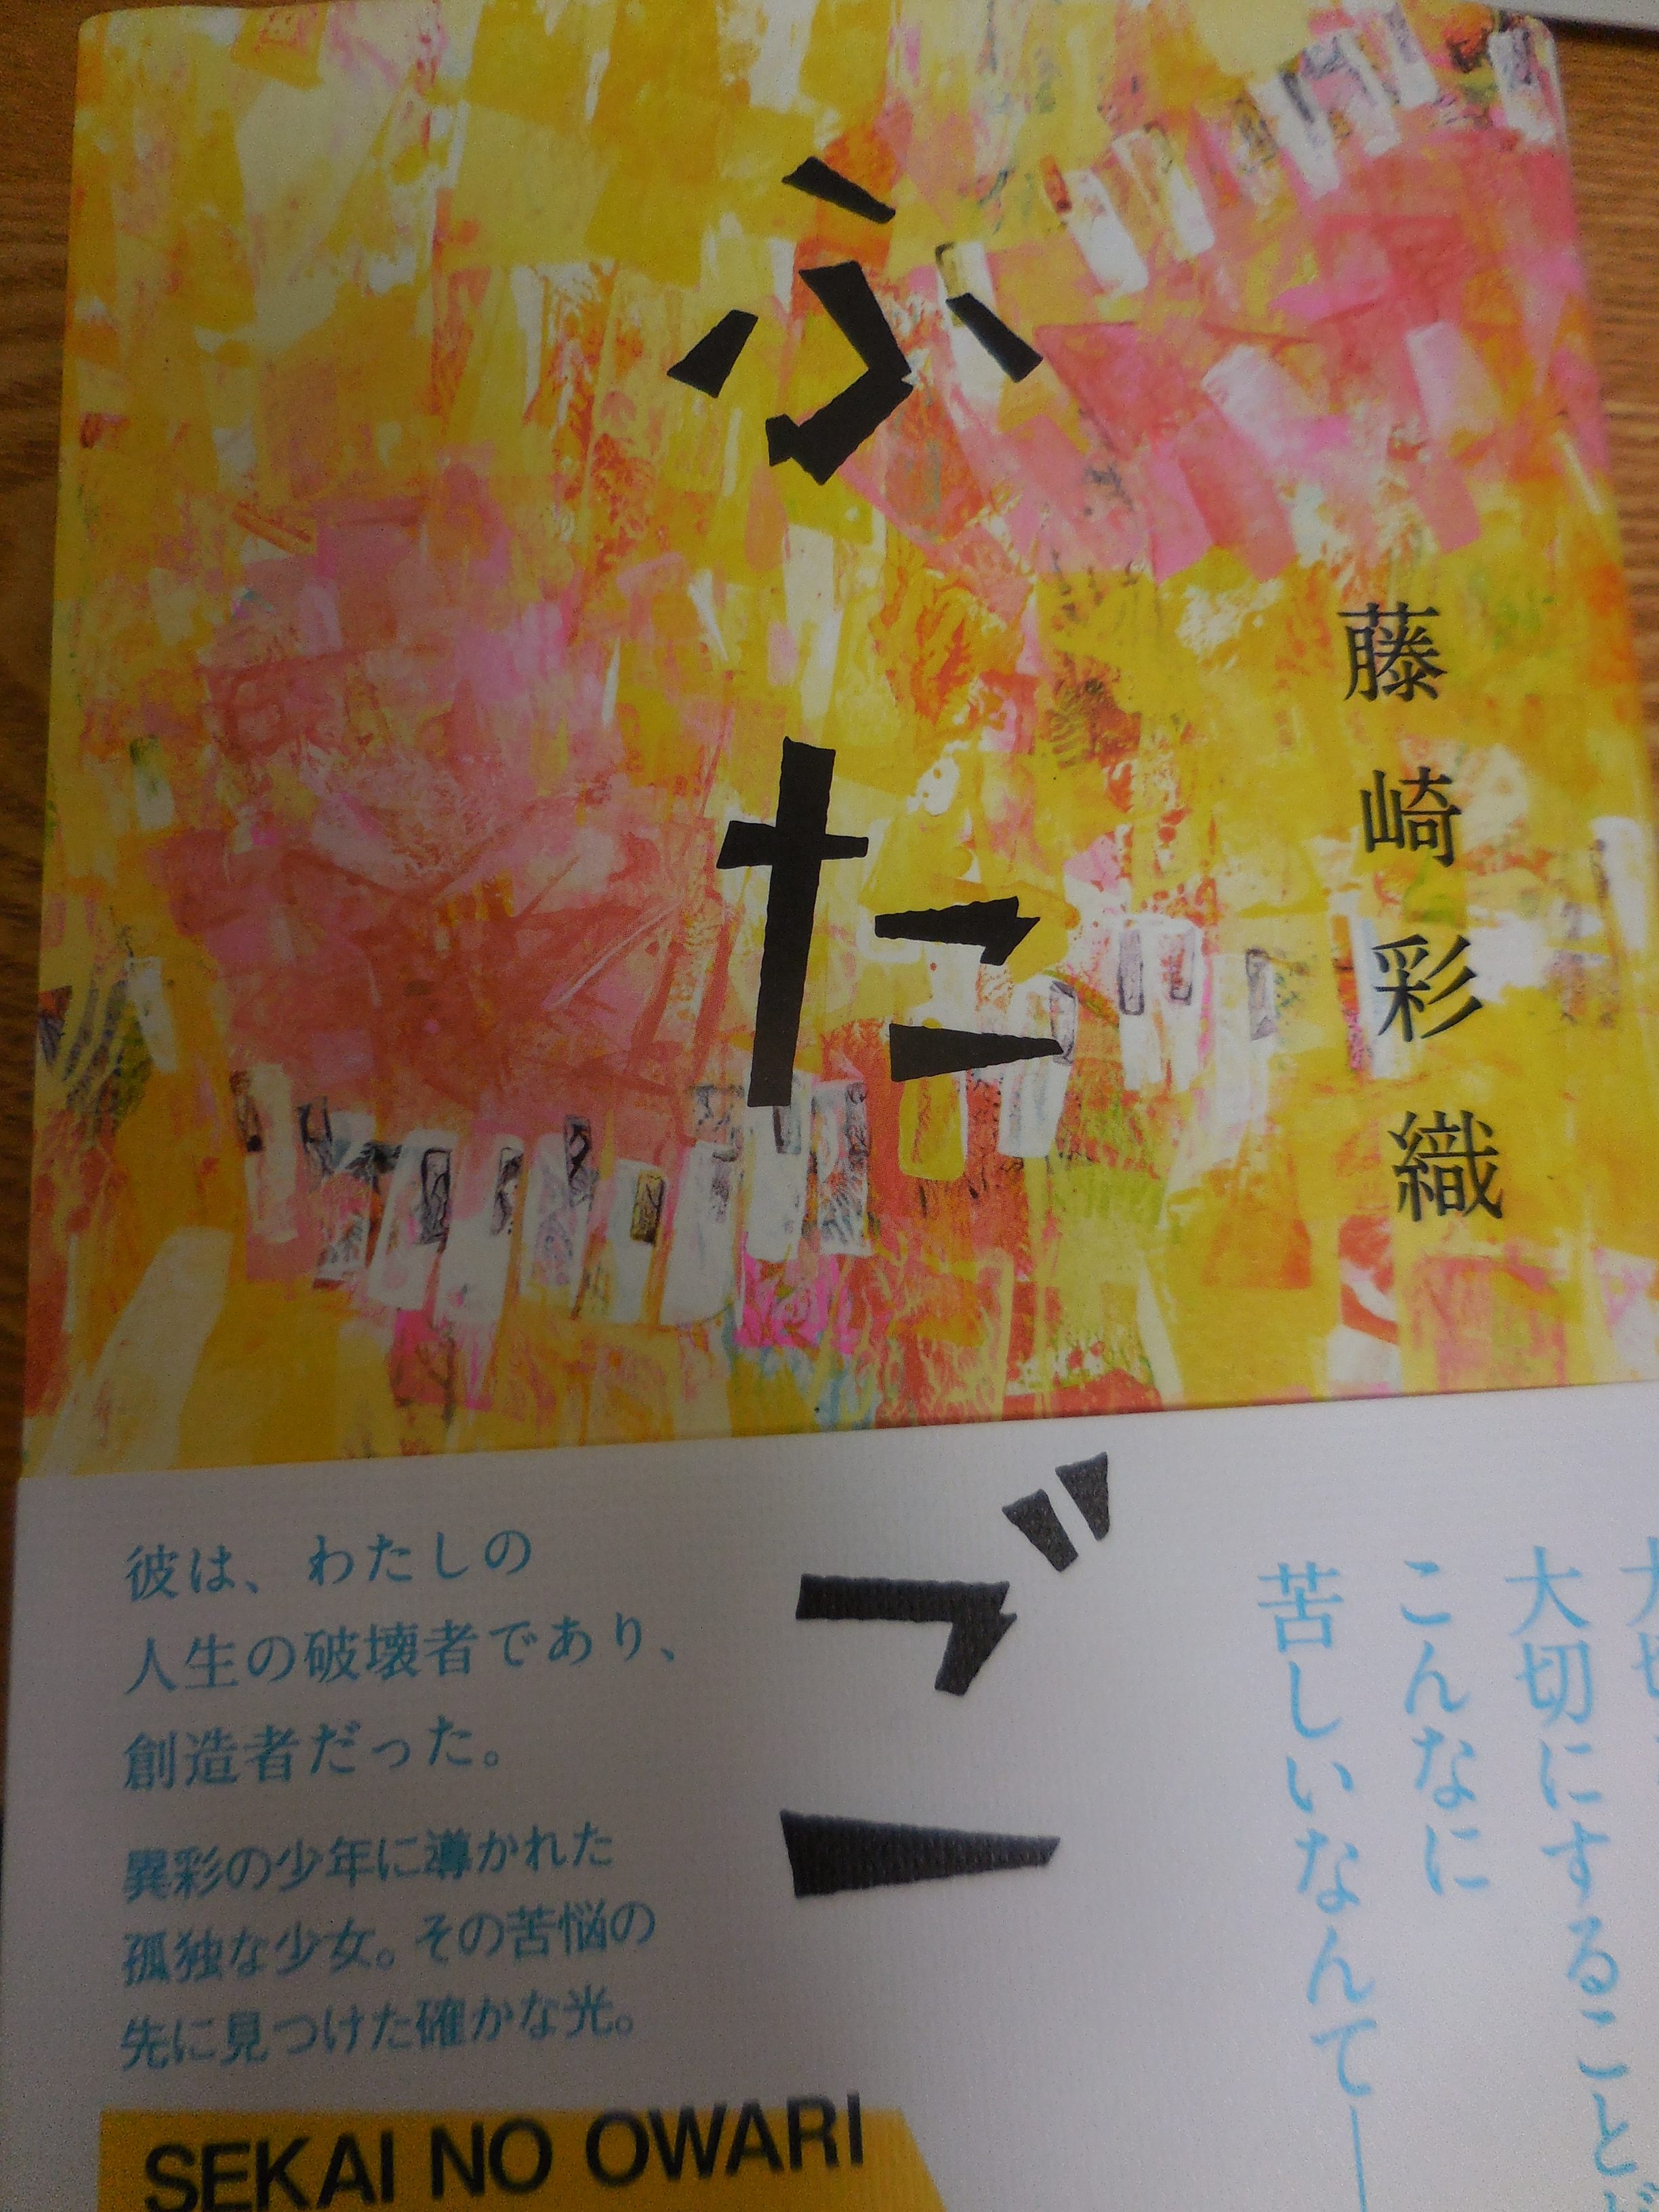 セカオワ深瀬と彩織の曲 幻の命 の歌詞の意味を改めて考える Tukushiは二人の子供 Sekai No Owari Life